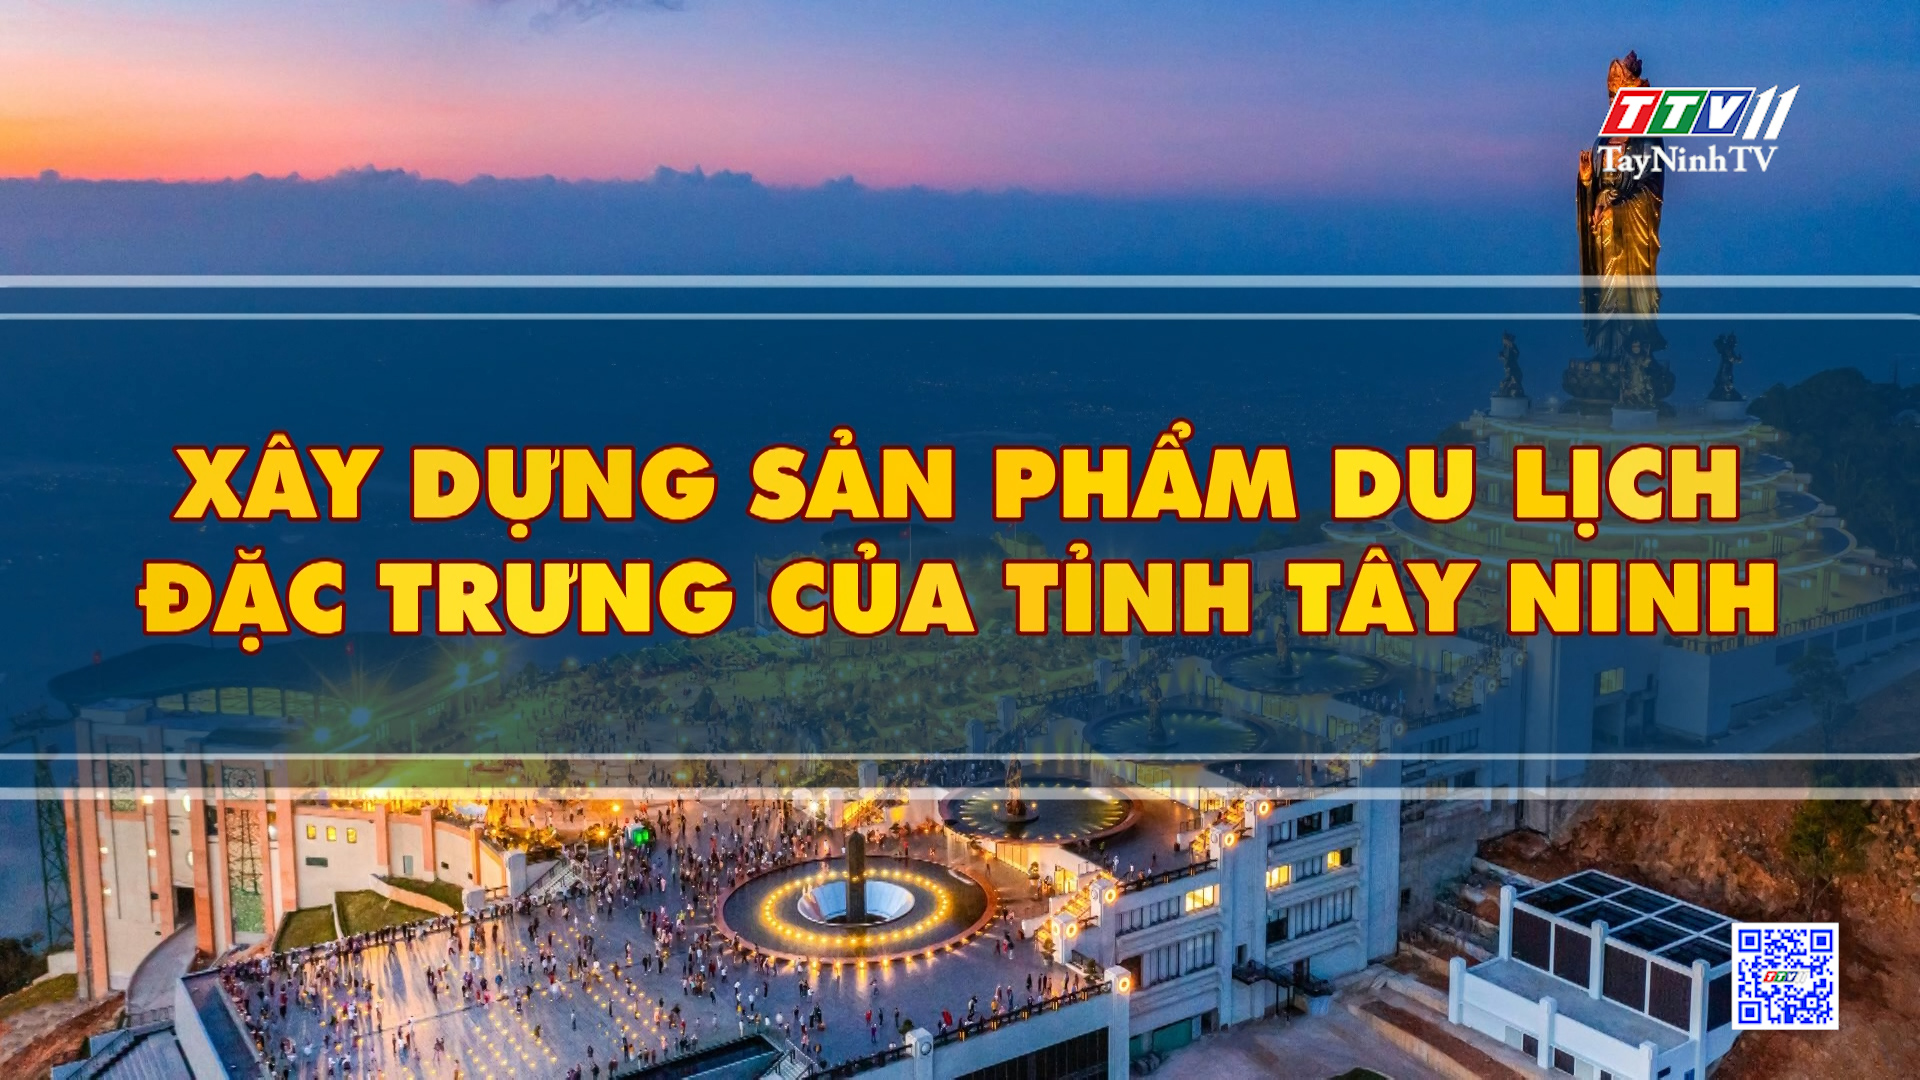 Xây dựng sản phẩm du lịch đặc trưng của tỉnh Tây Ninh | Tiếng nói cử tri | TayNinhTV